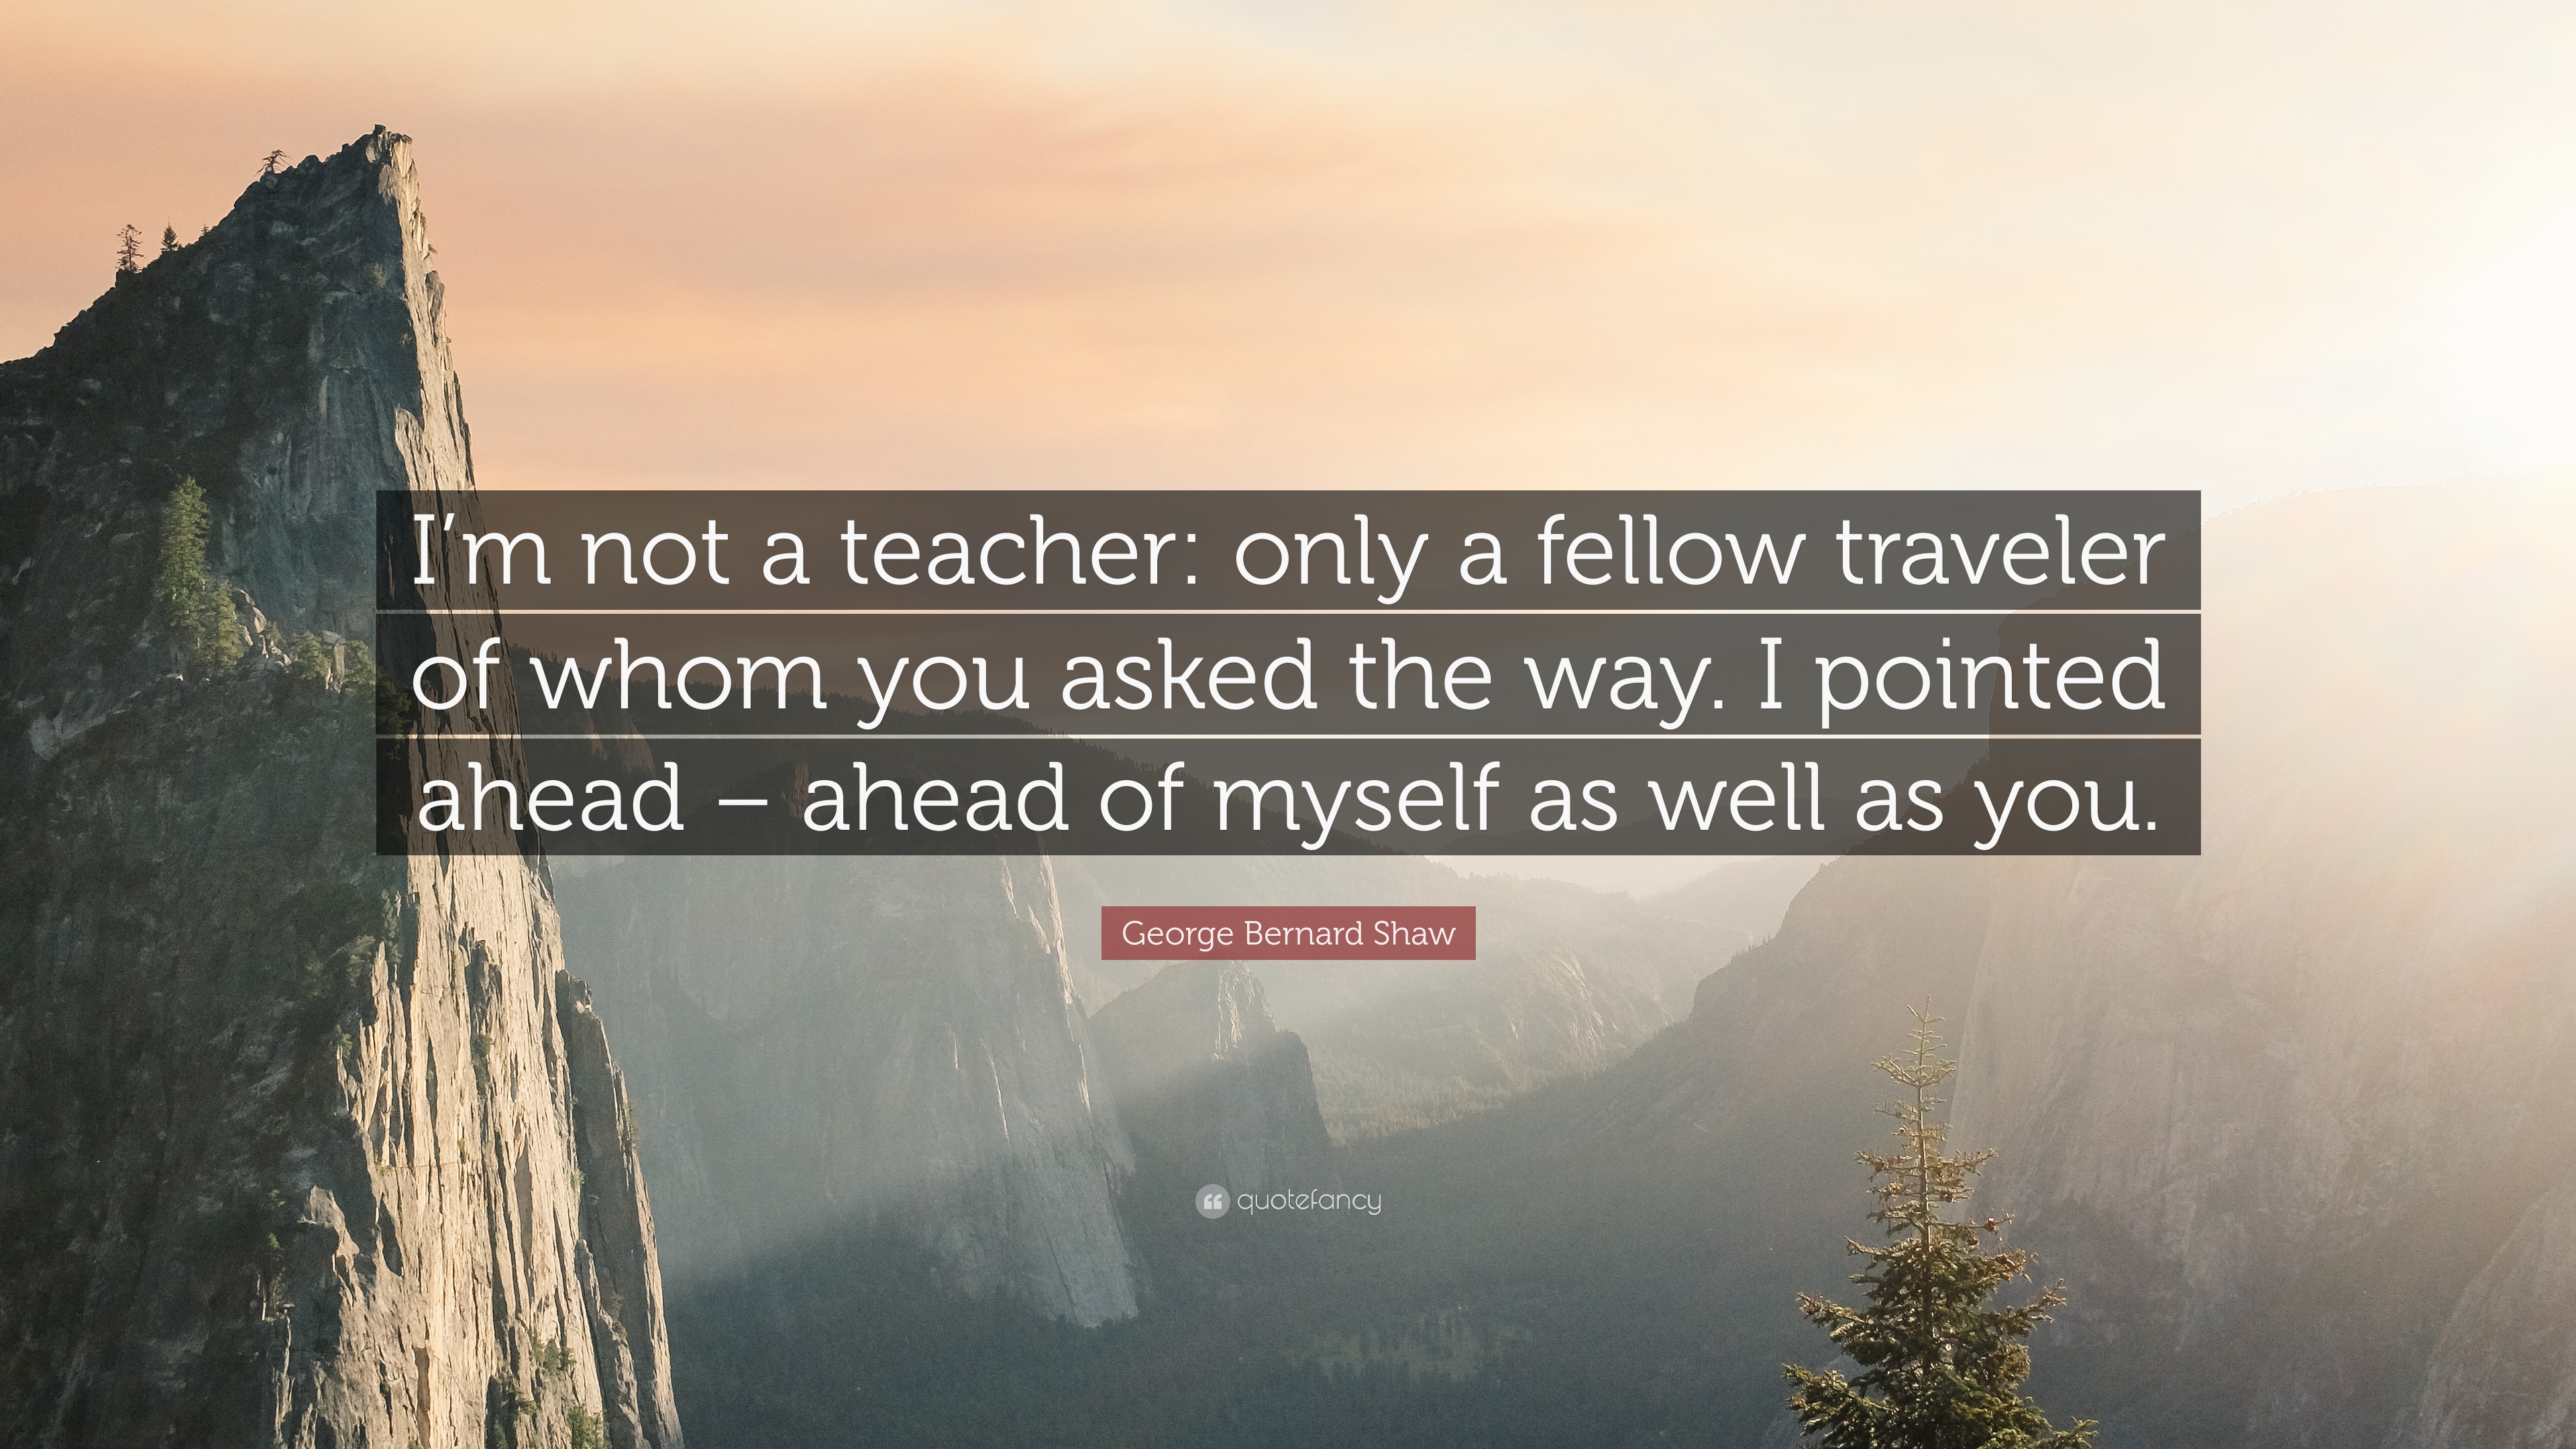 George Bernard Shaw Quote: “I'm not a teacher: only a fellow ...